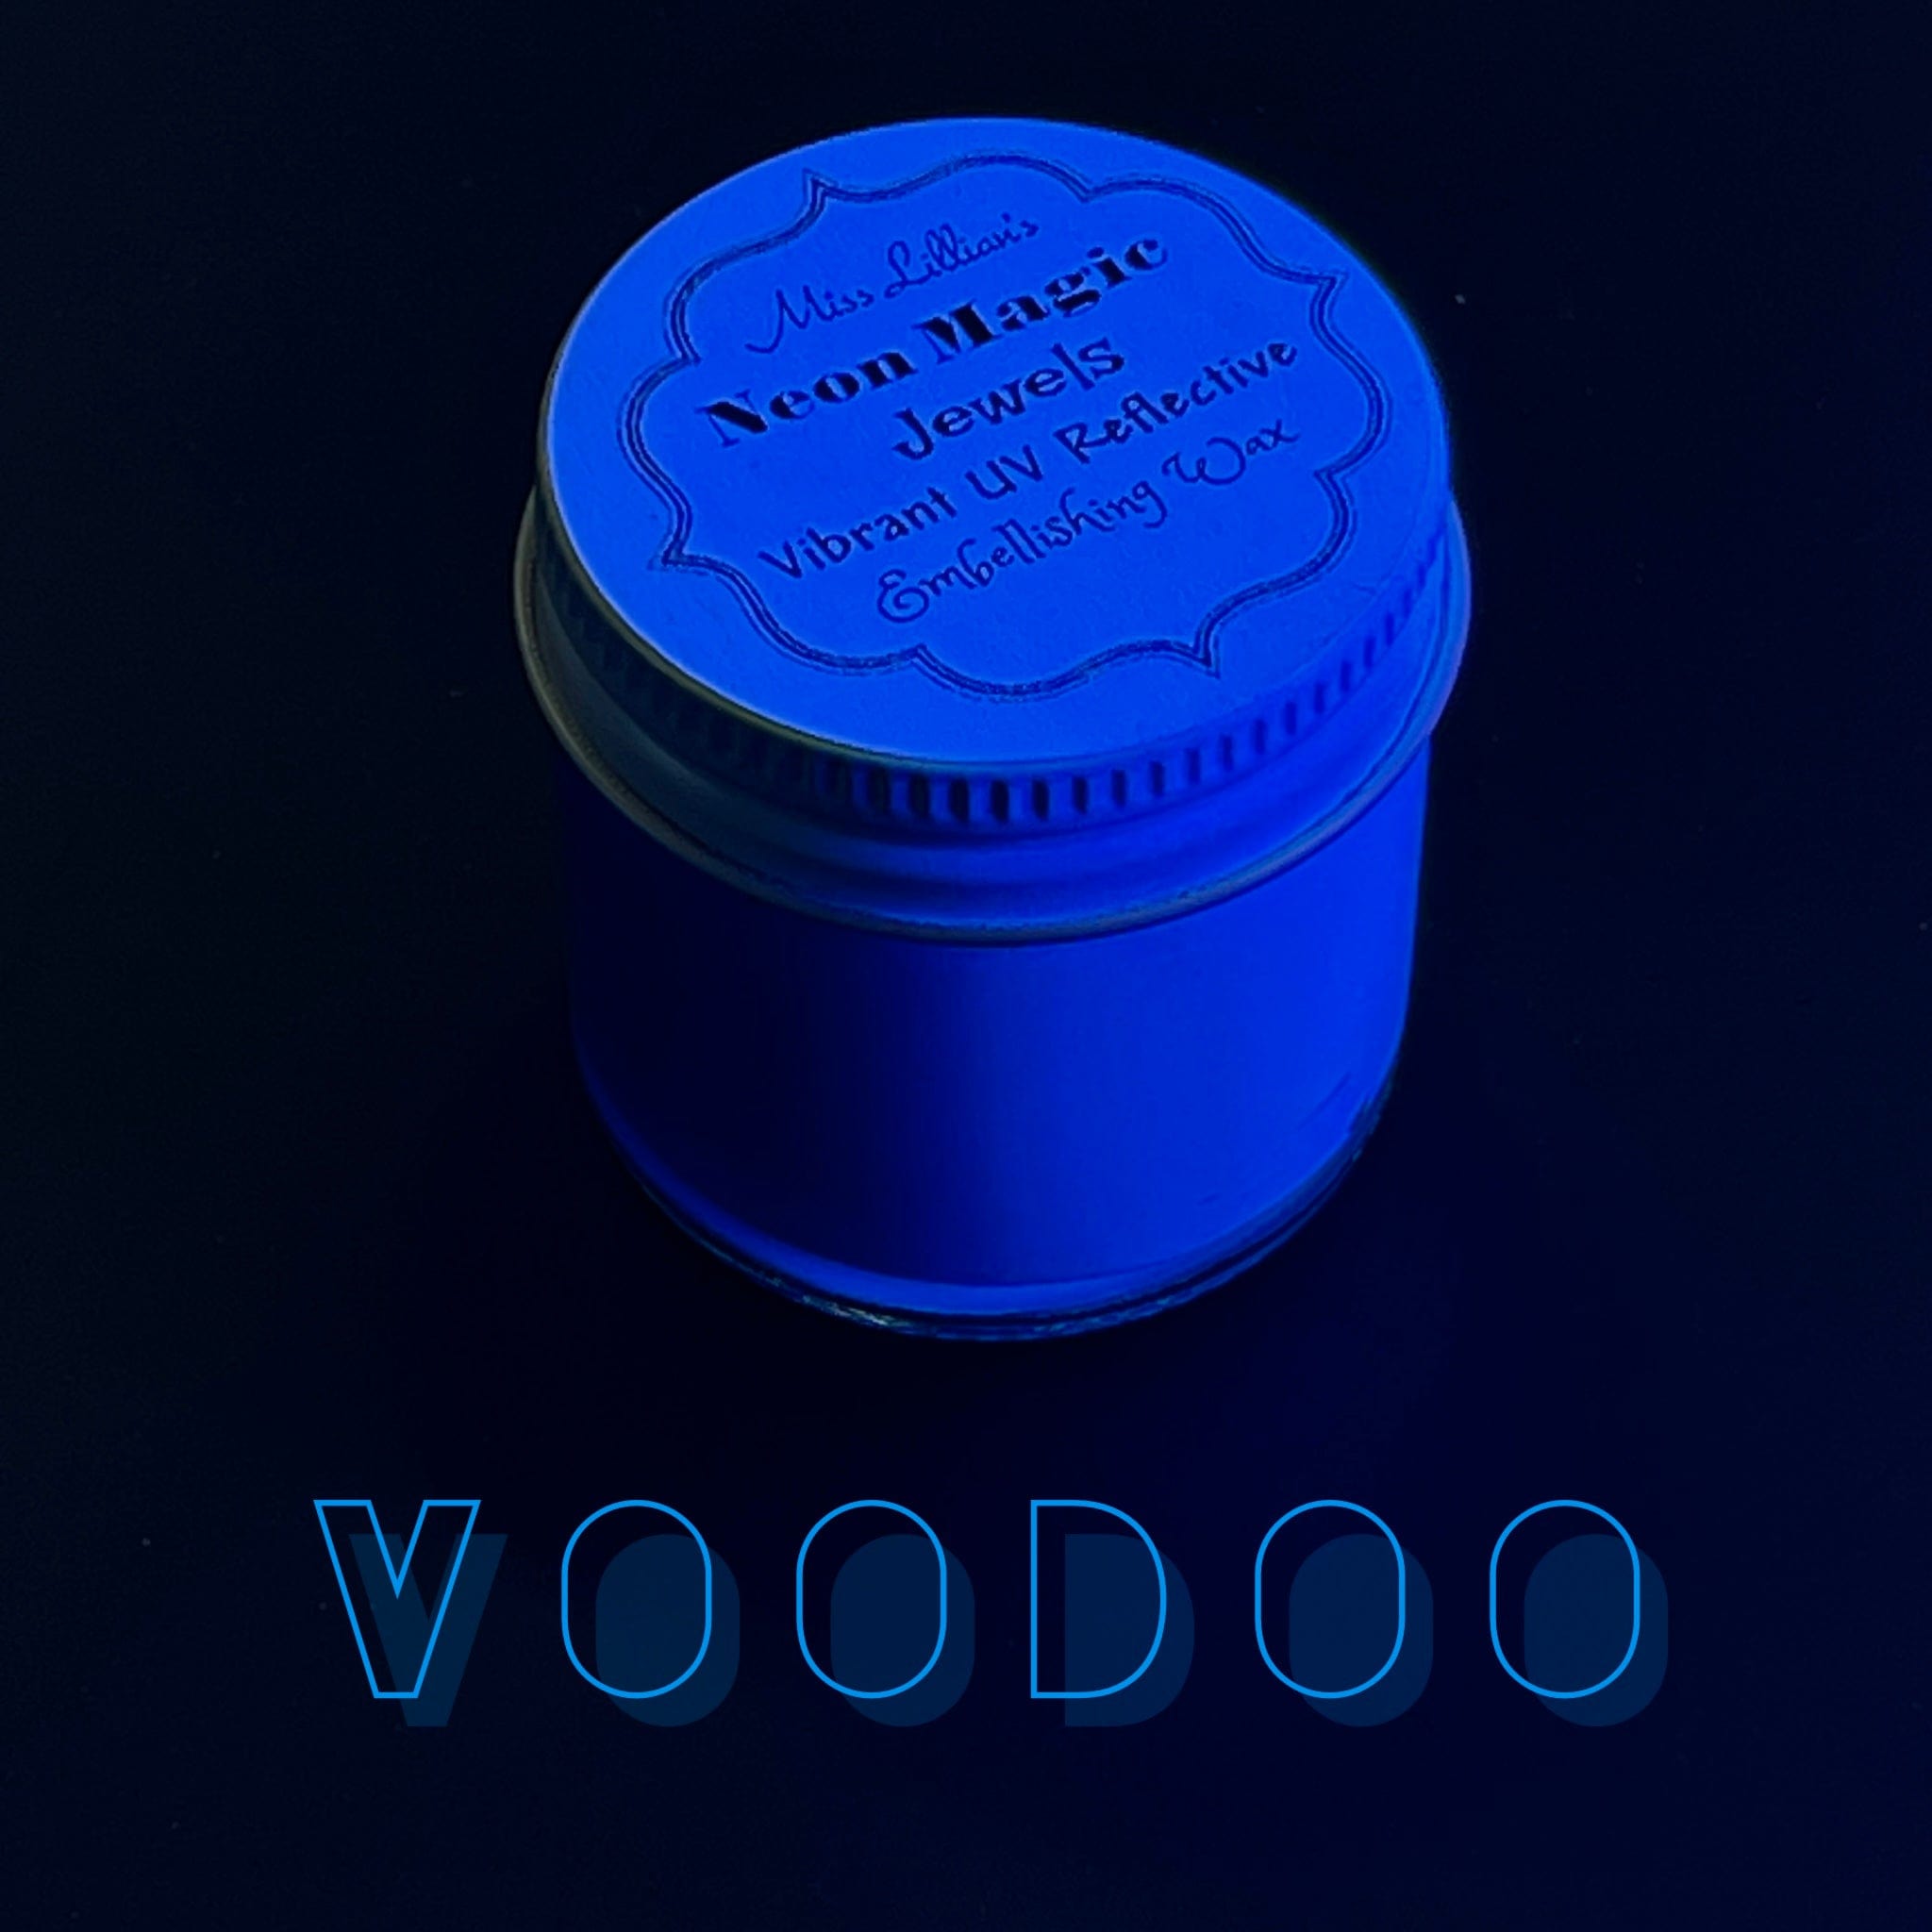 VODOO-NEON Gilding Wax Jewels (azure blue)